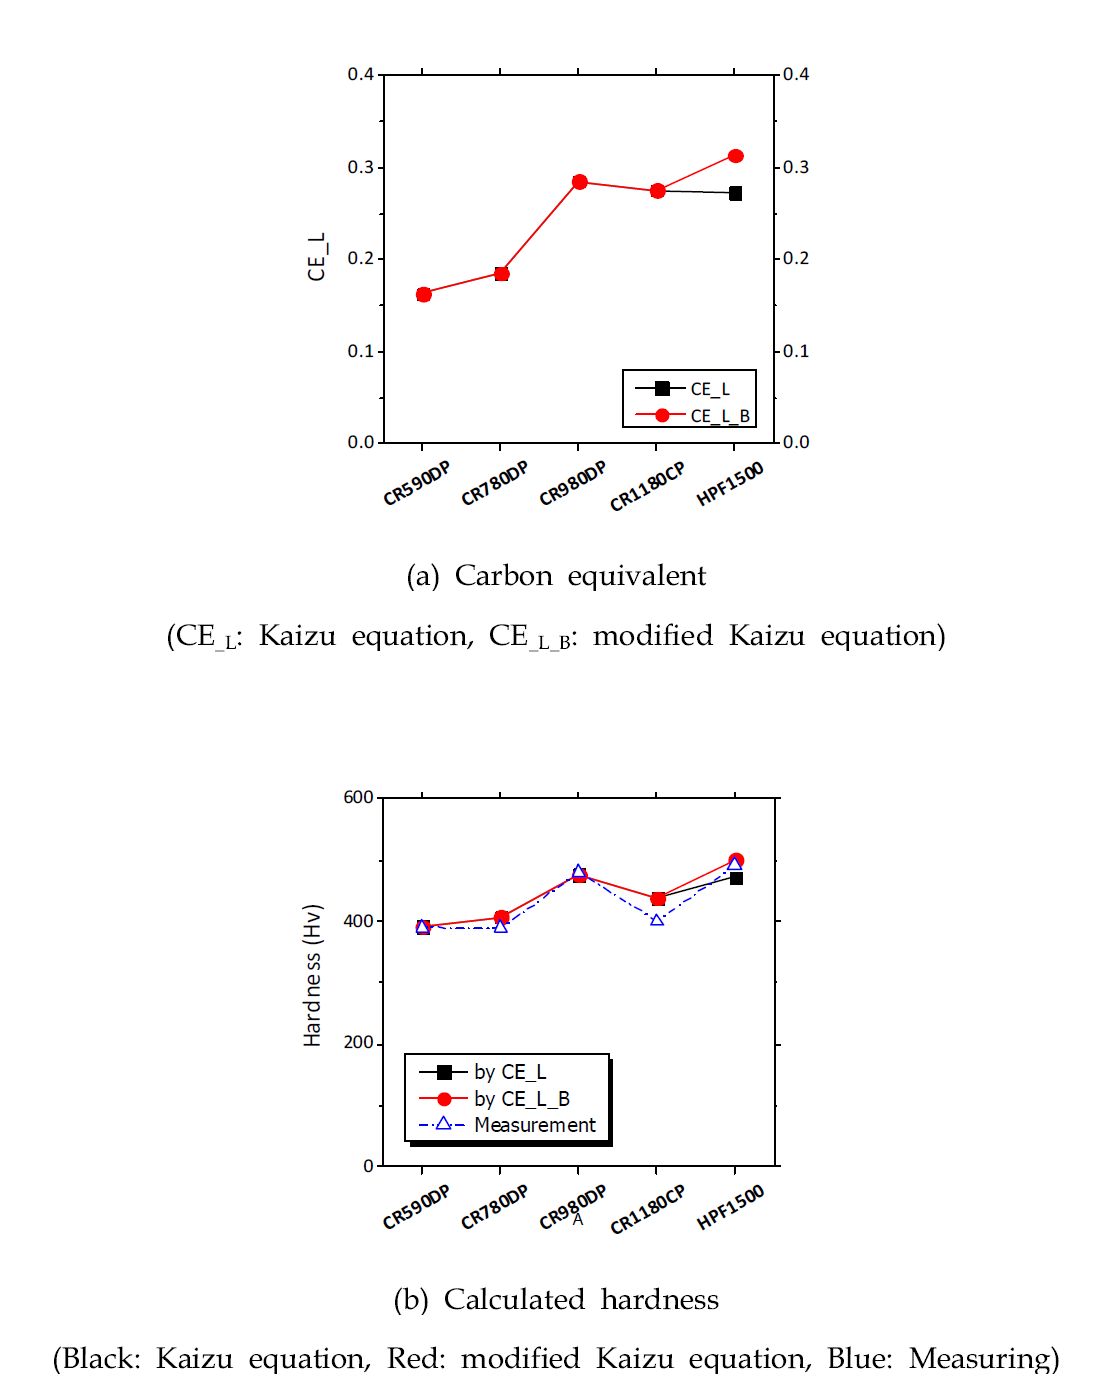 Kaizu식과 수정된 Kaizu식을 적용하여 계산된 탄소당량 및 경도값